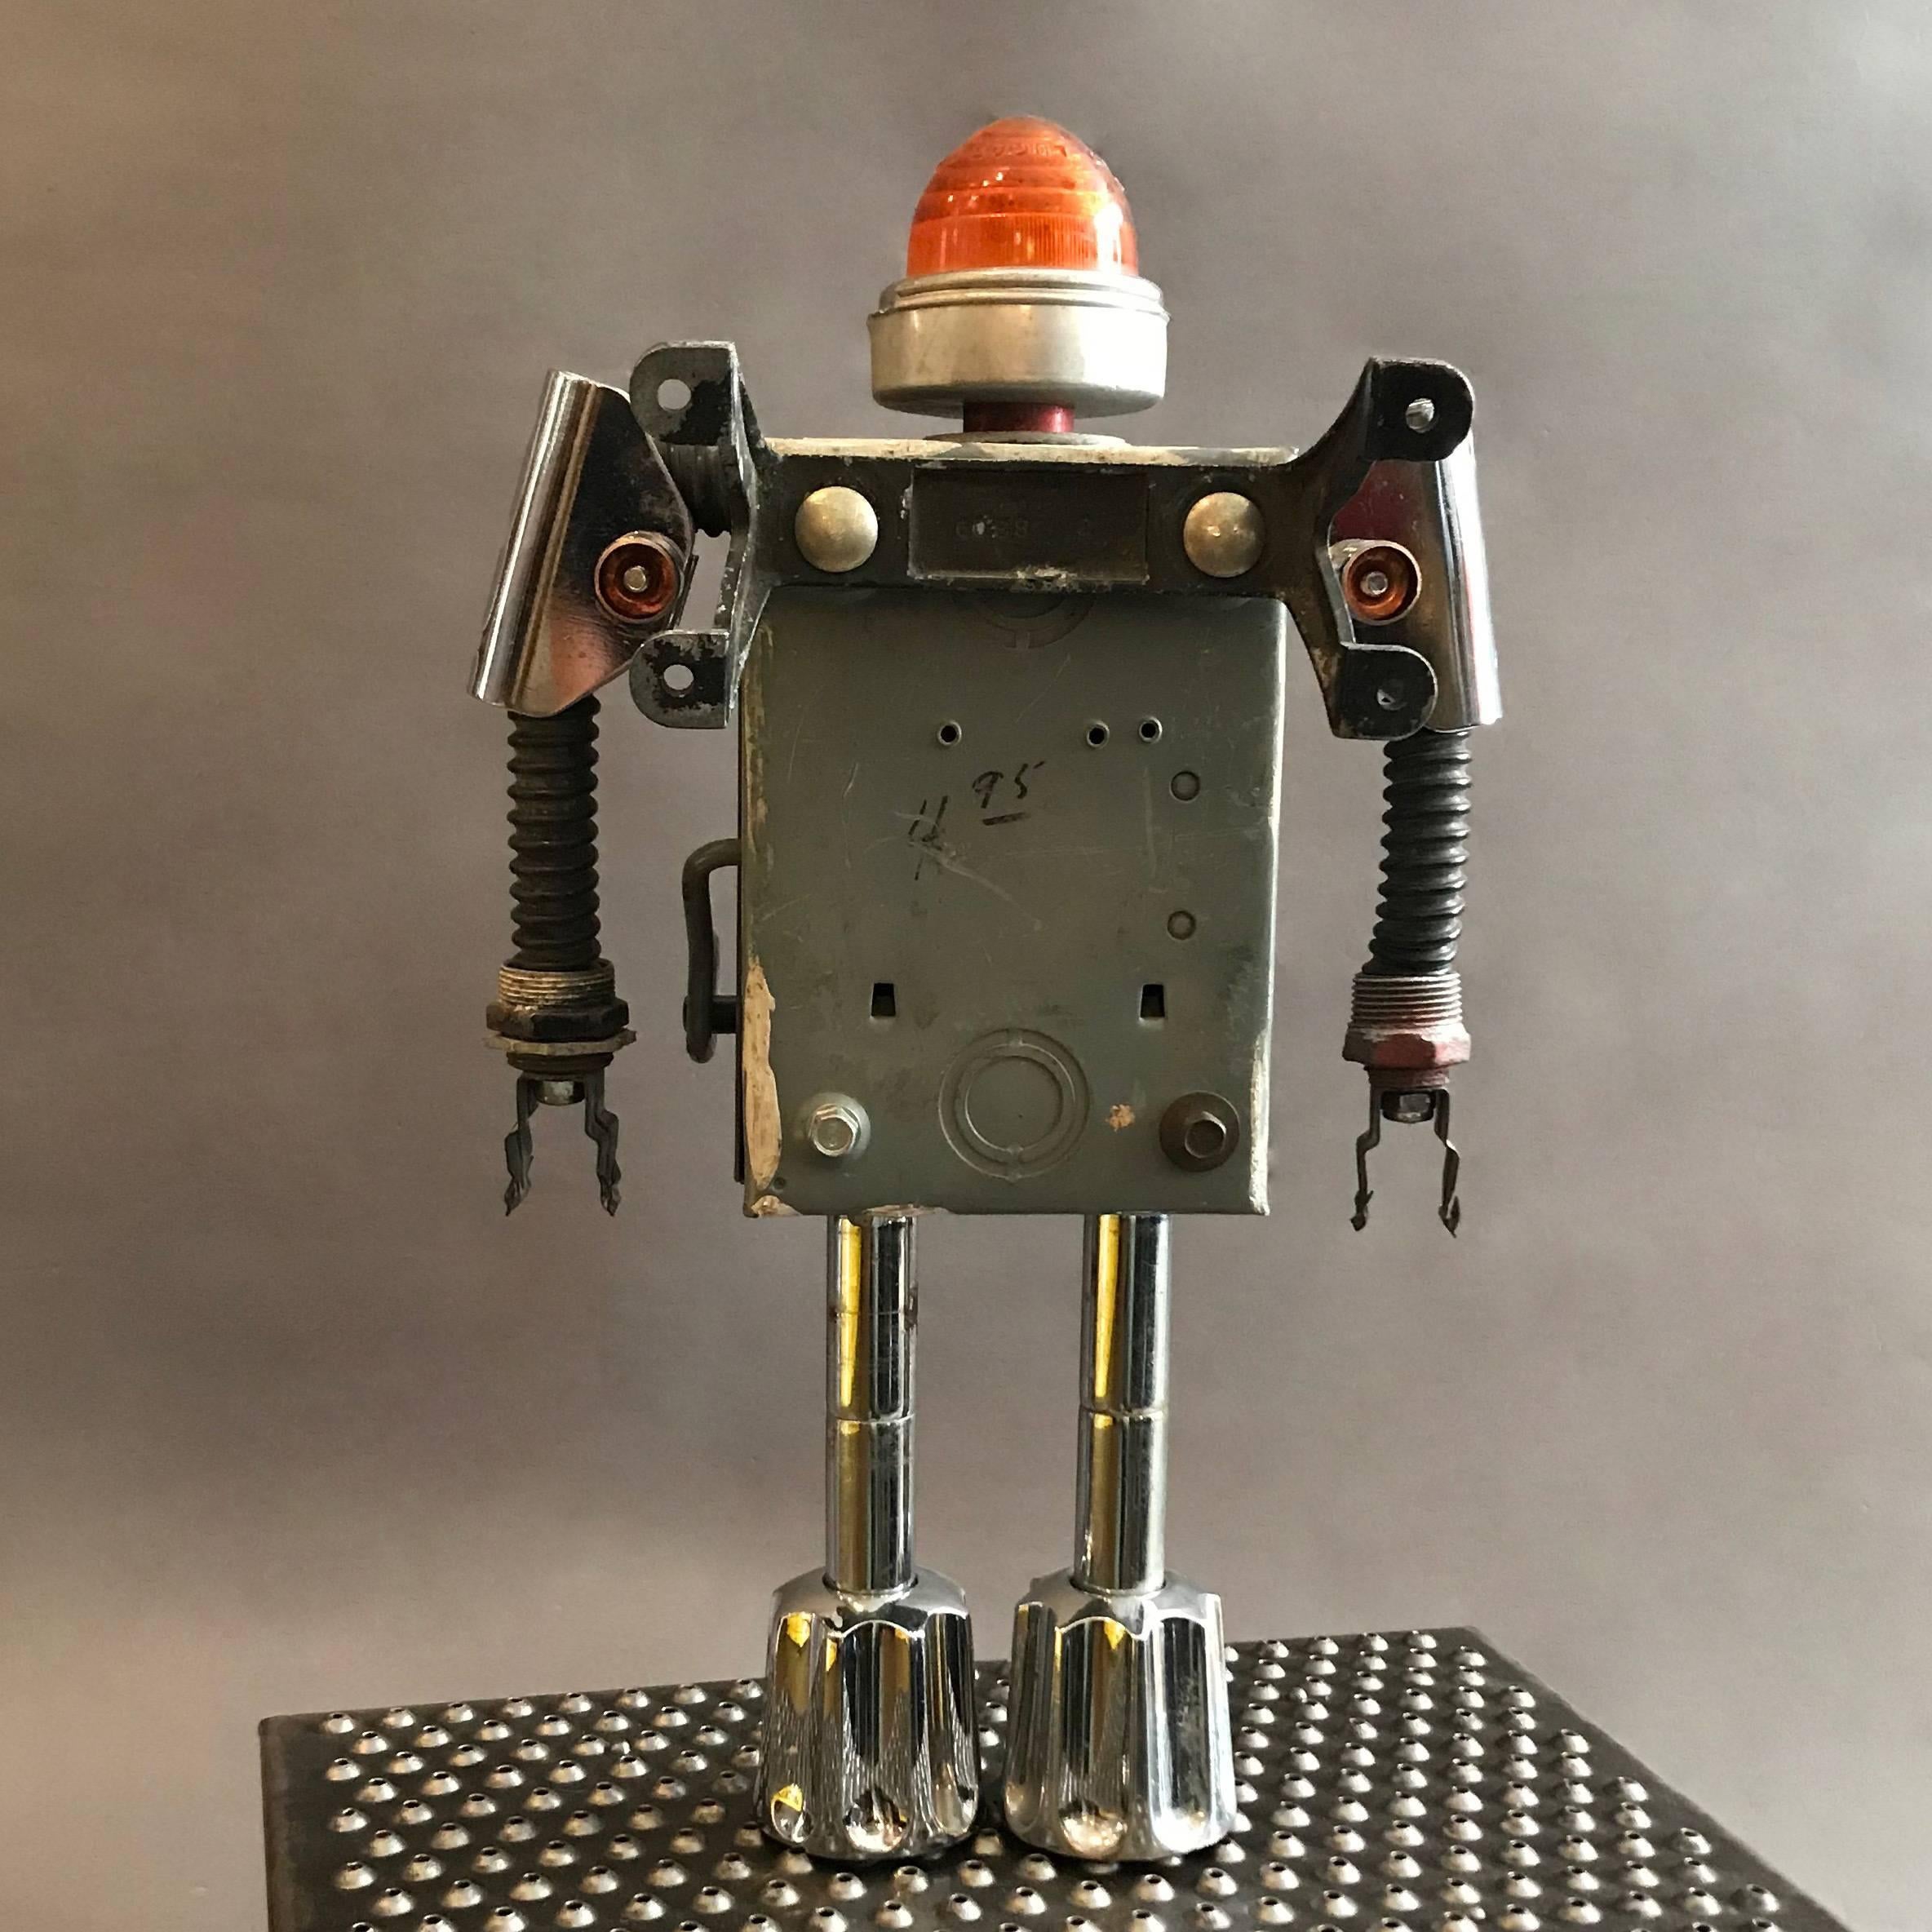 American Federal Robot Sculpture by Bennett Robot Works